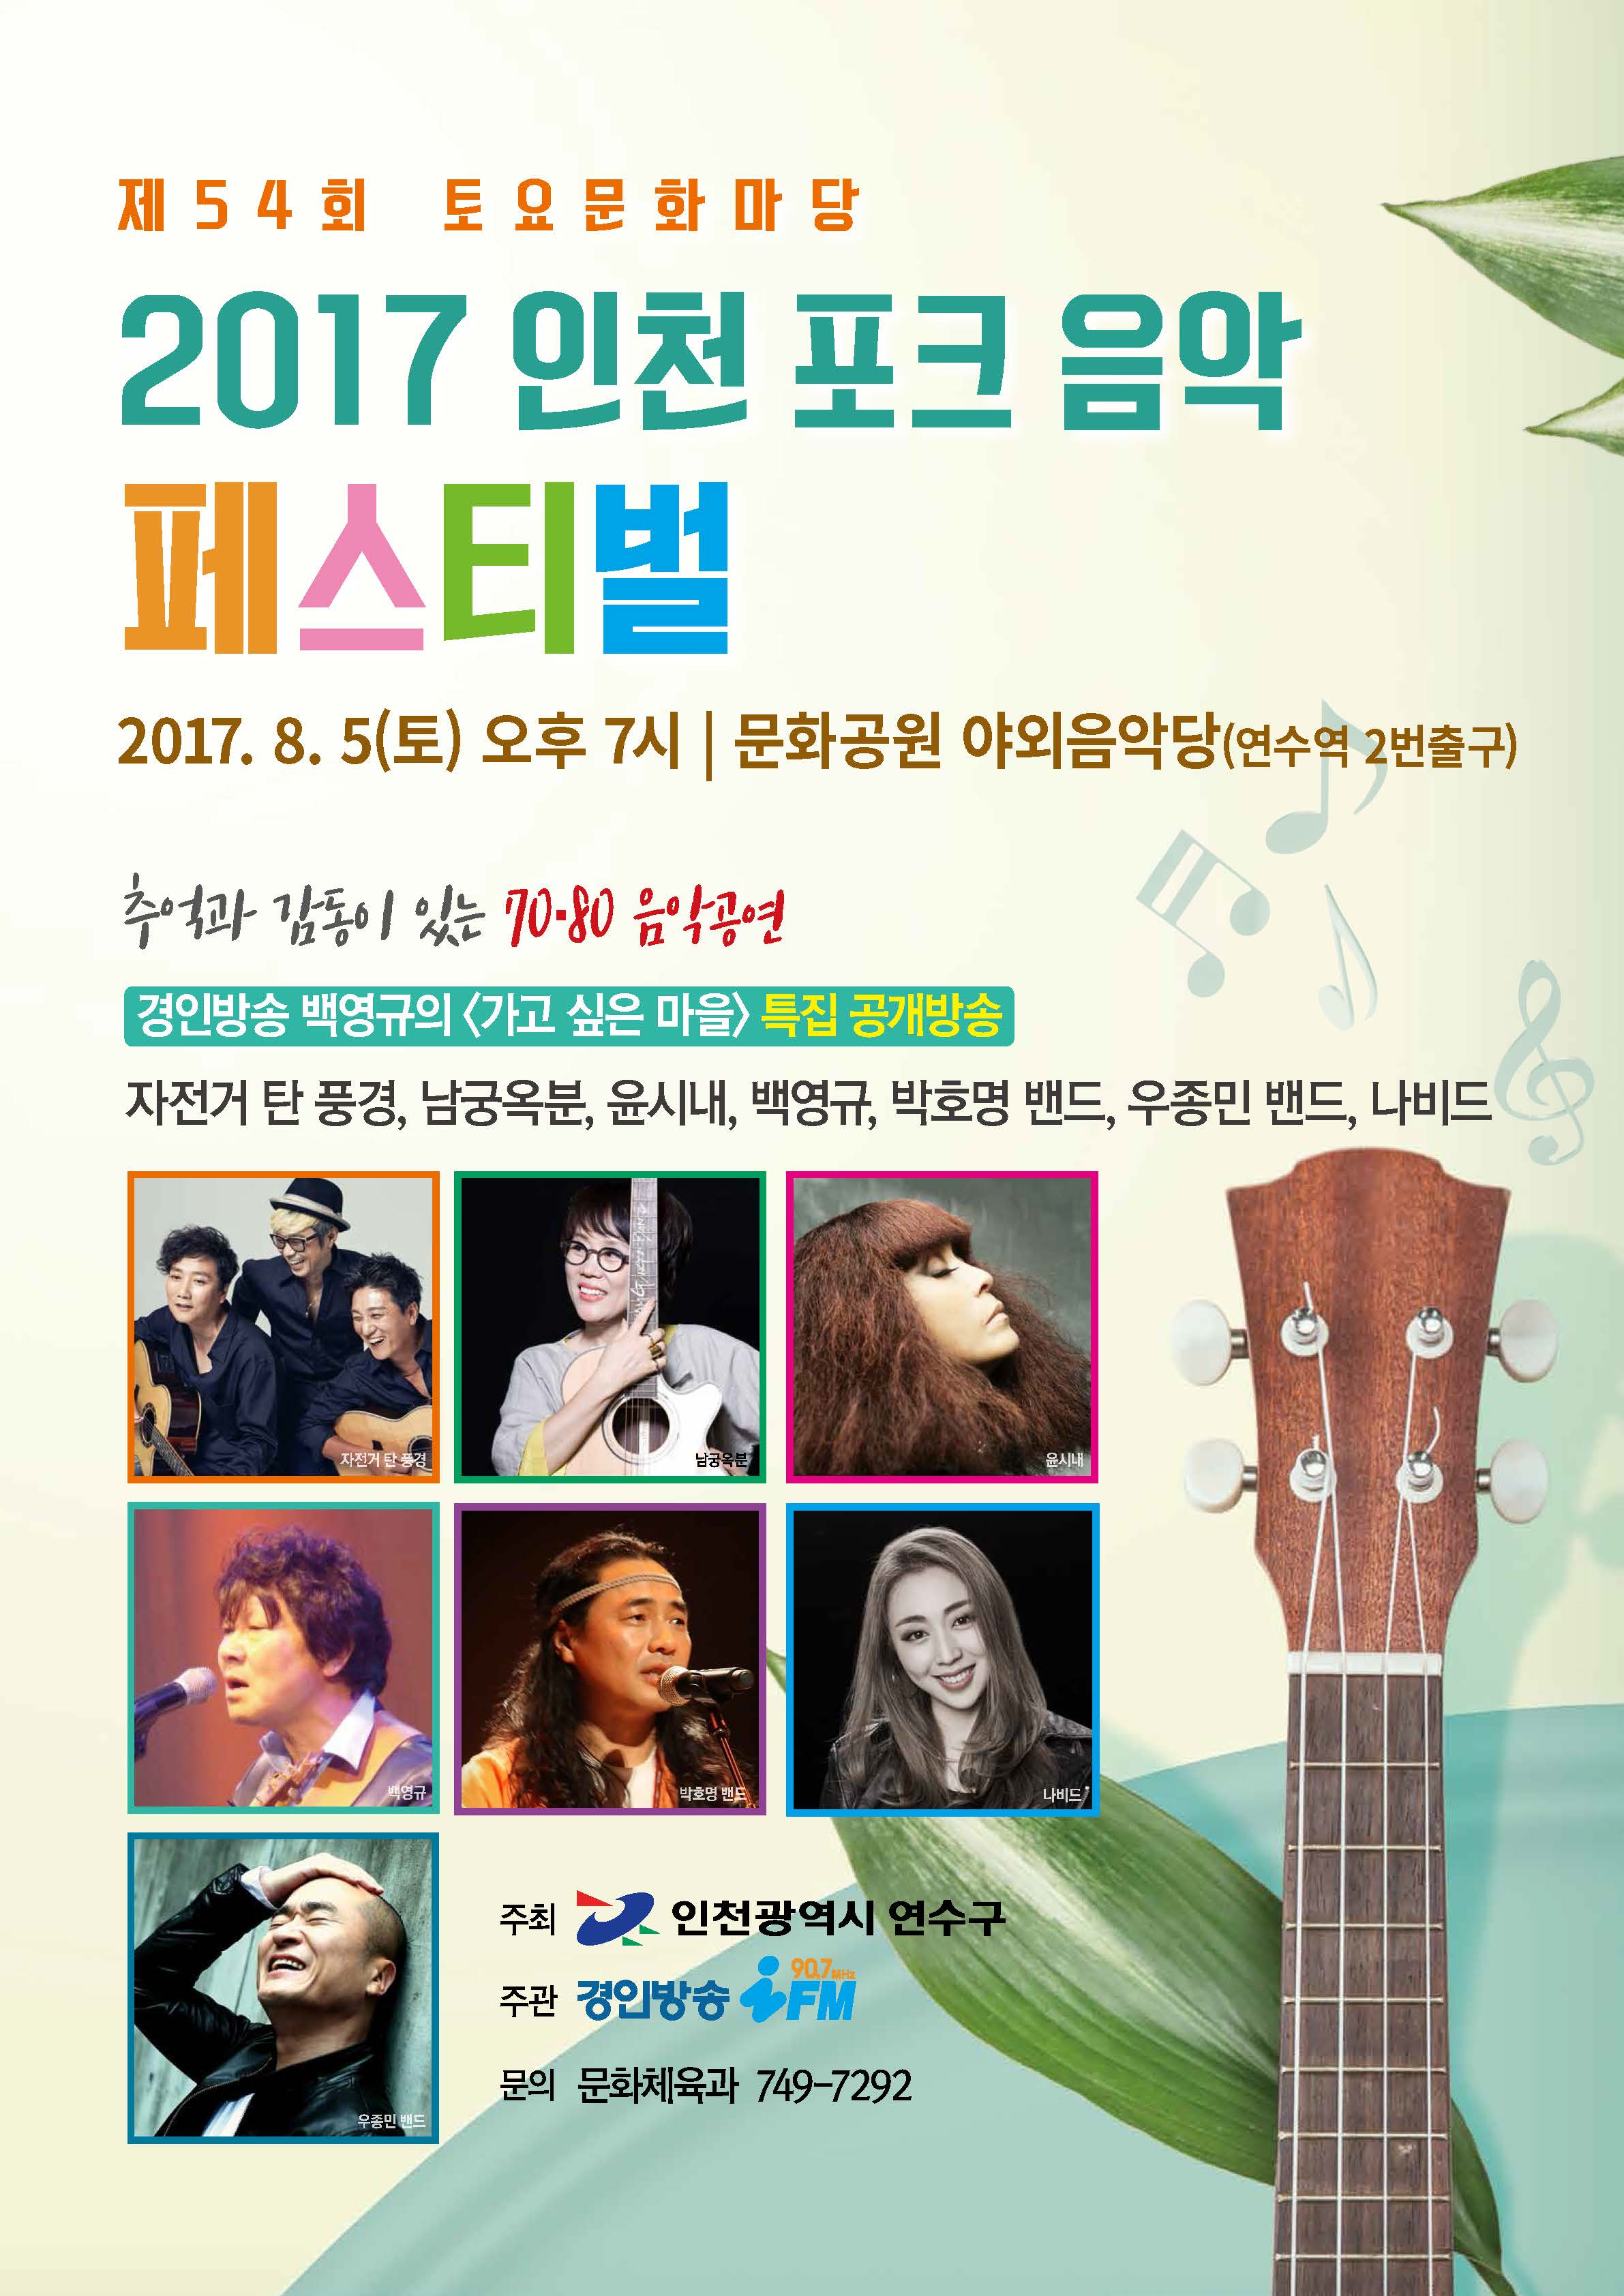 2017 인천 포크 음악 페스티벌 공연포스터 - 자세한 내용은 상세보기의 공연소개를 참고해주세요.